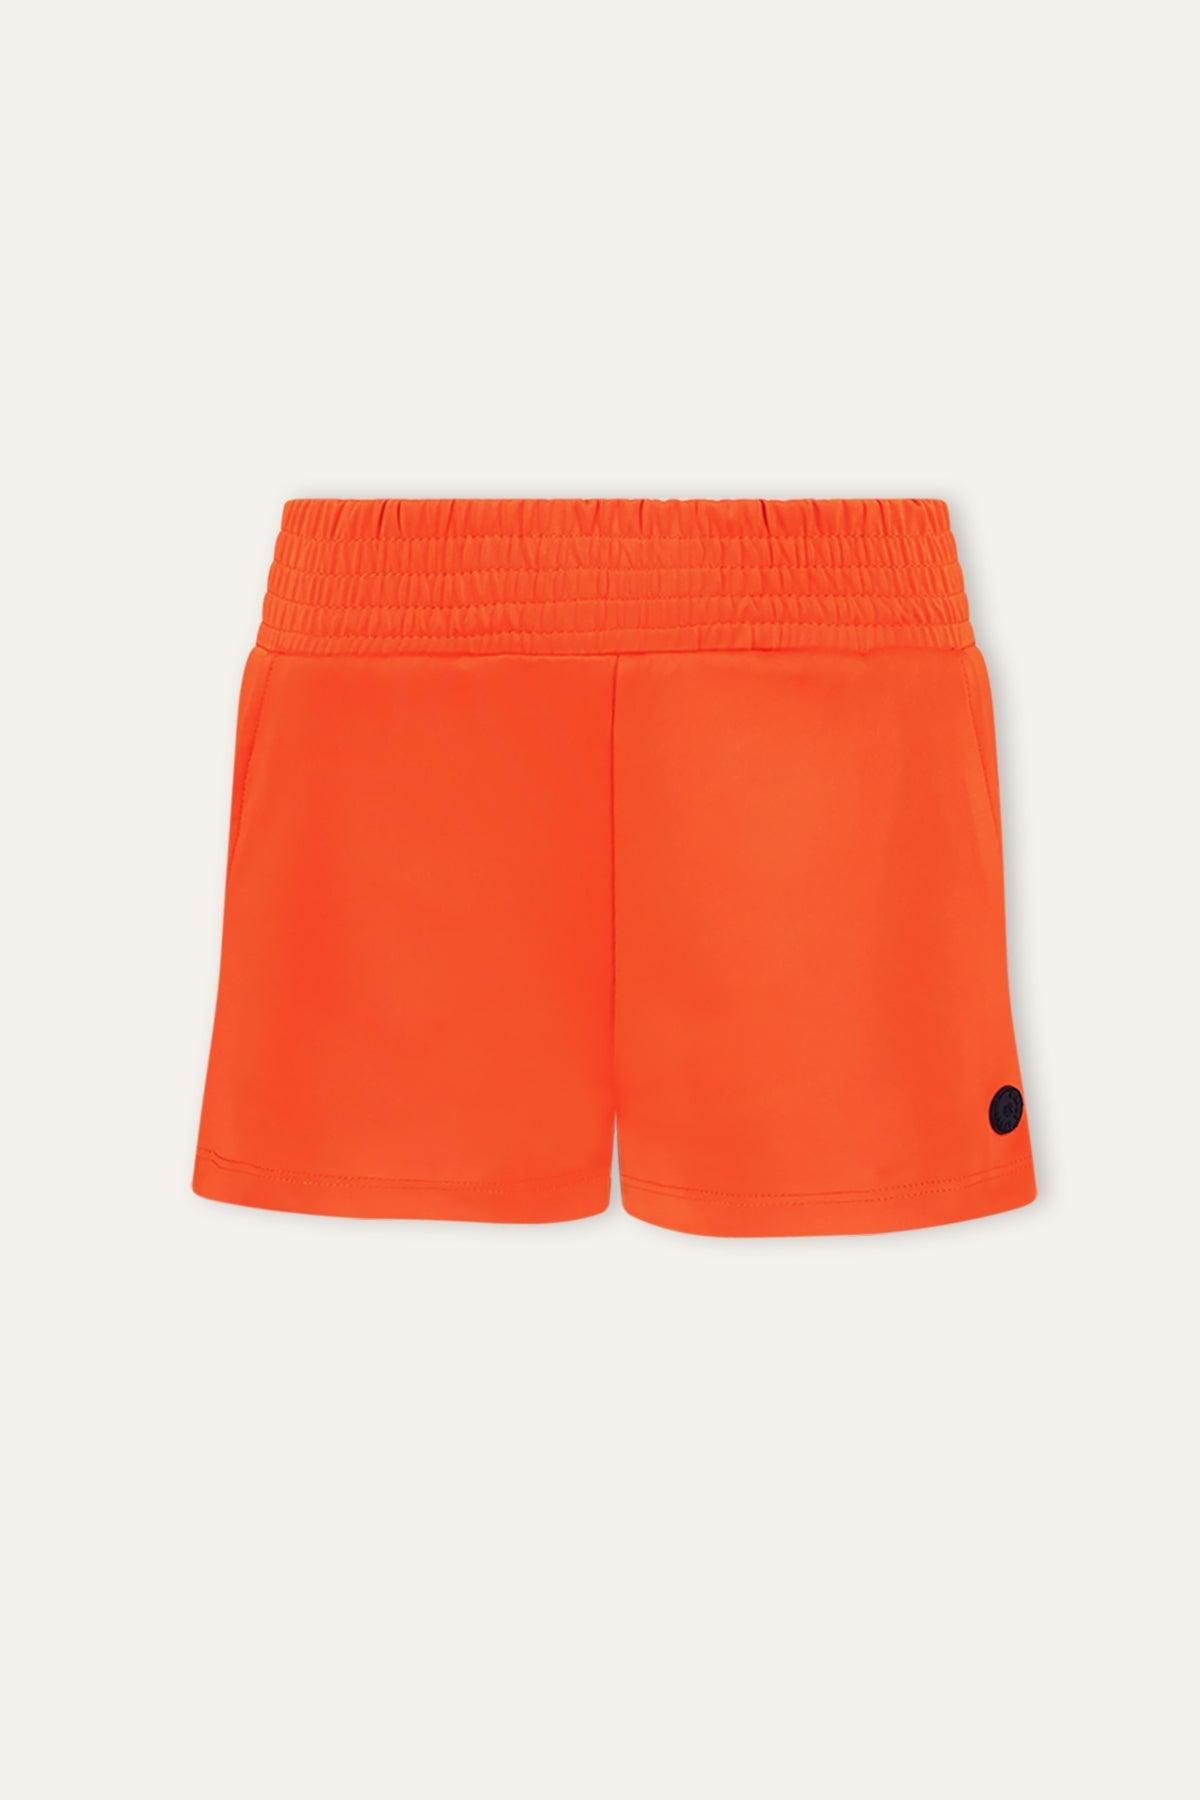 B.Nosy Ayla Shorts Orange Glo